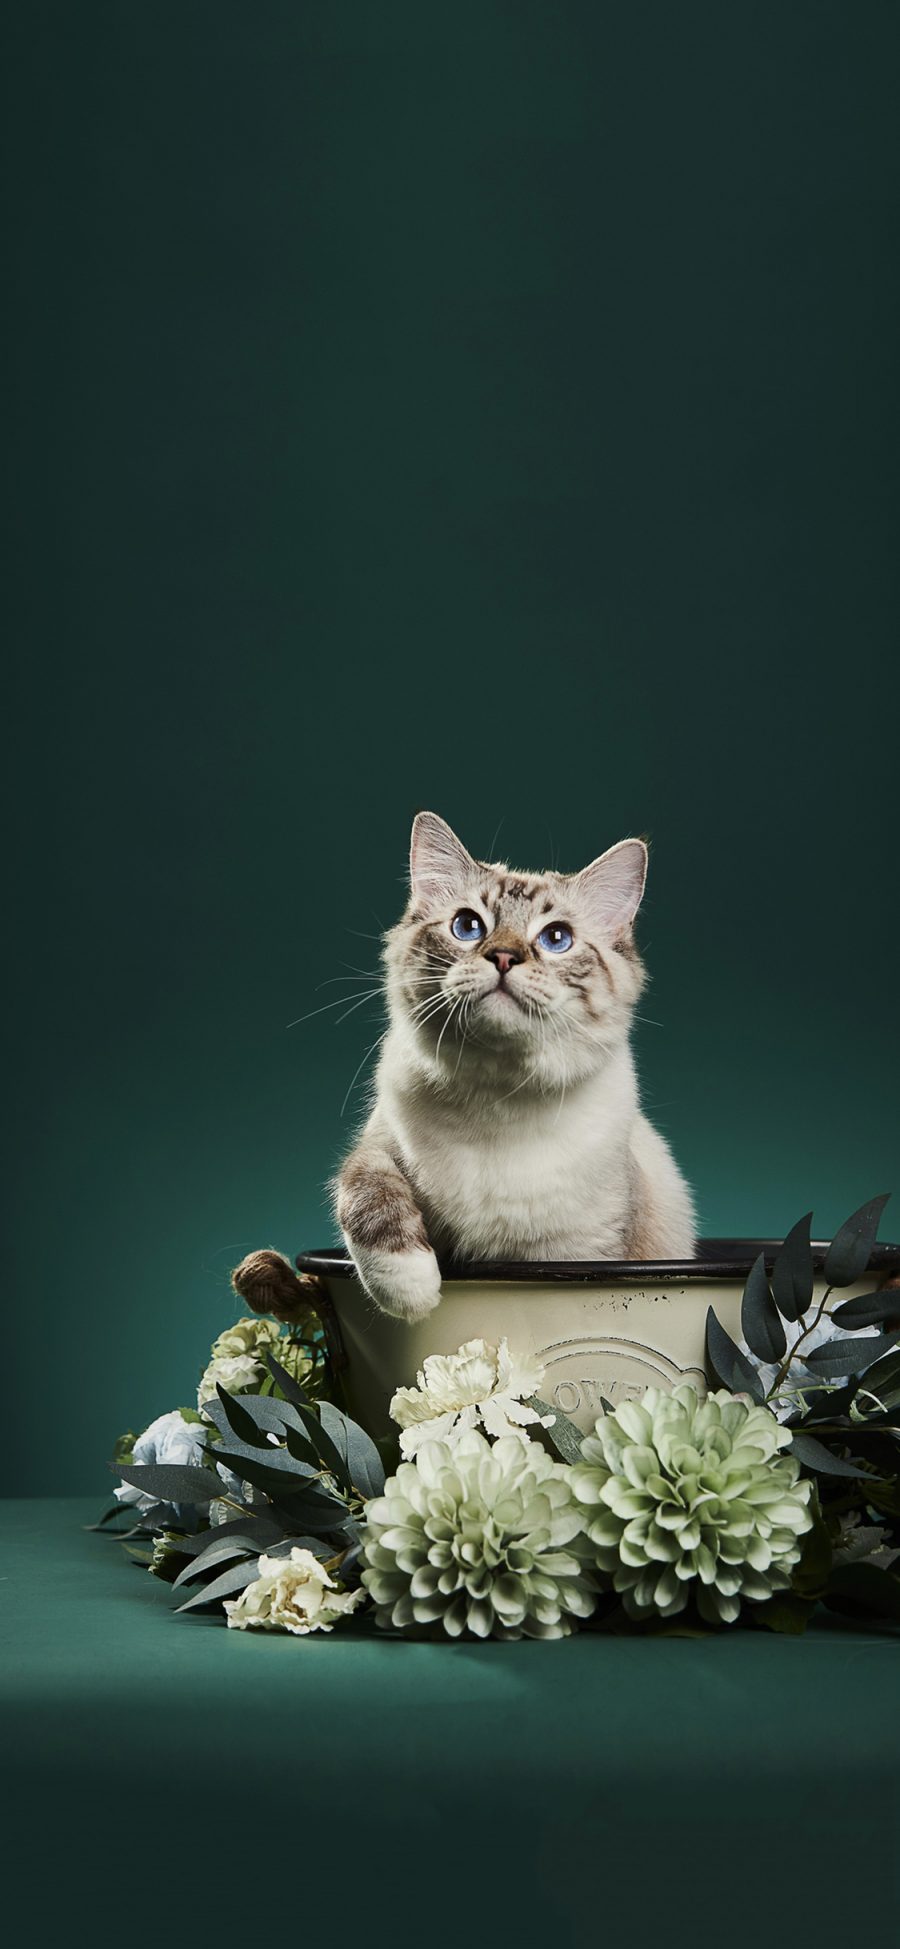 [2436×1125]宠物 萌宠 猫咪 鲜花 写真 苹果手机壁纸图片